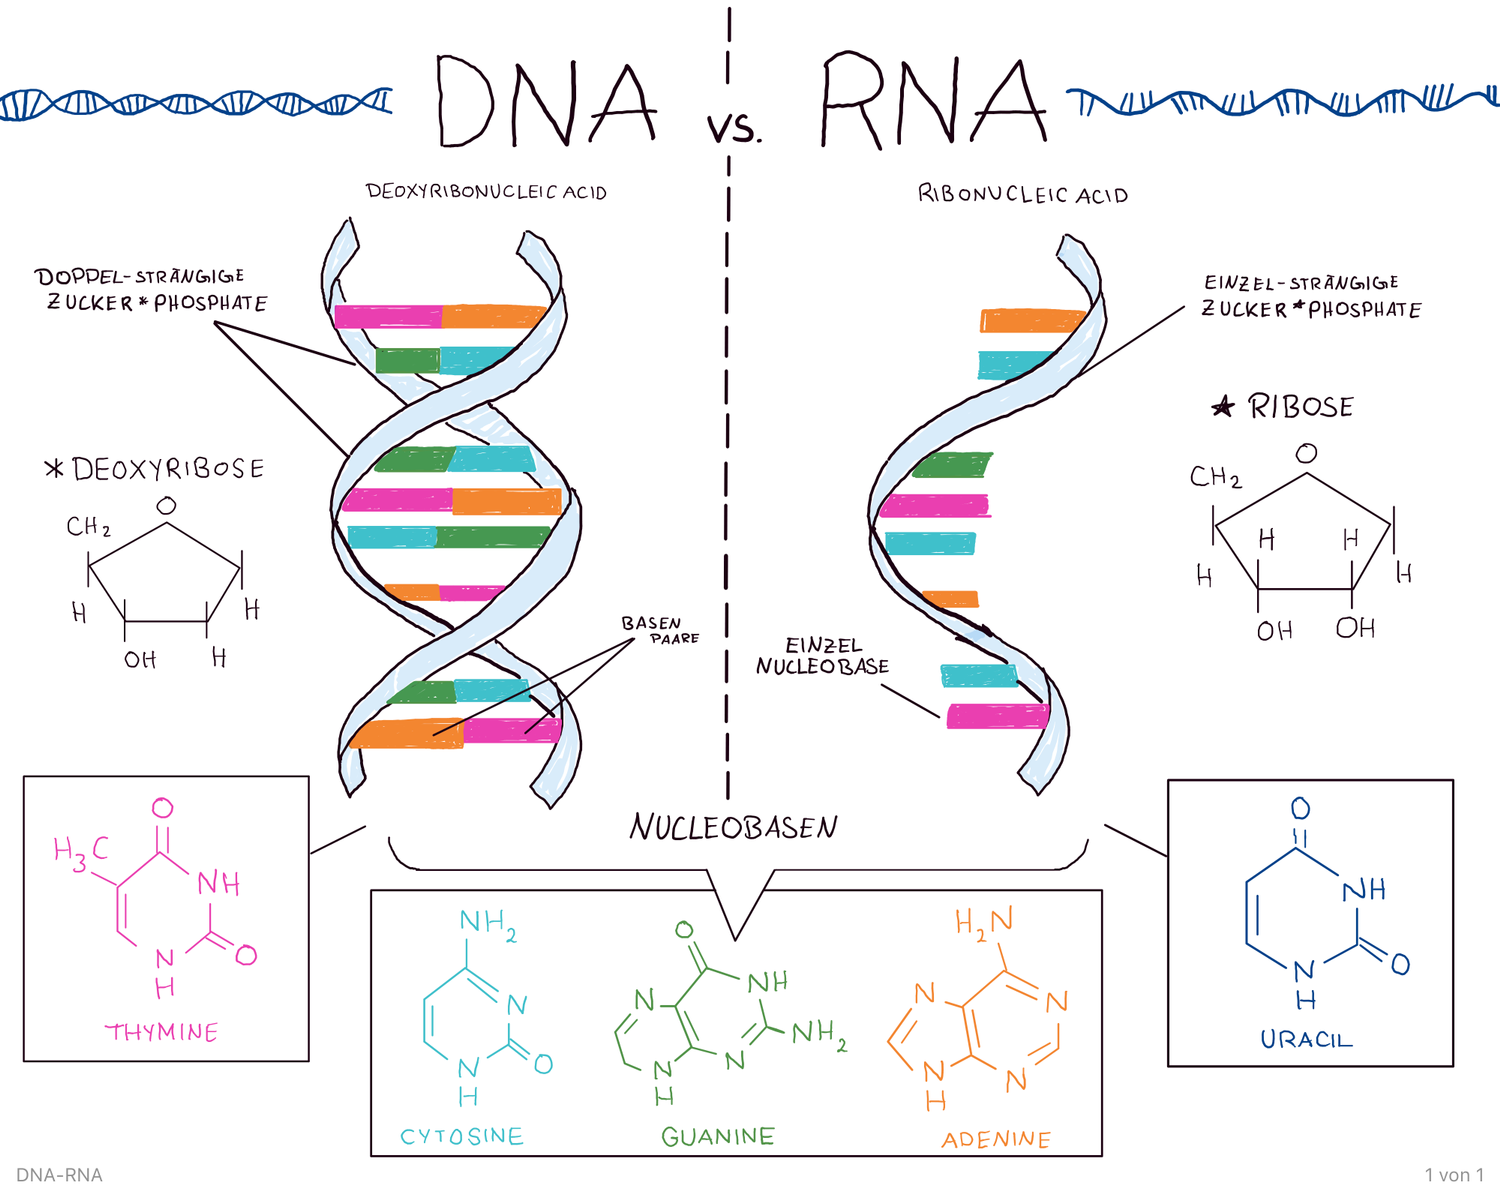 Днк и рнк общее. ДНК И РНК. ДНК И РНК кратко. ДНК И РНК отличия. Строение ДНК И РНК.